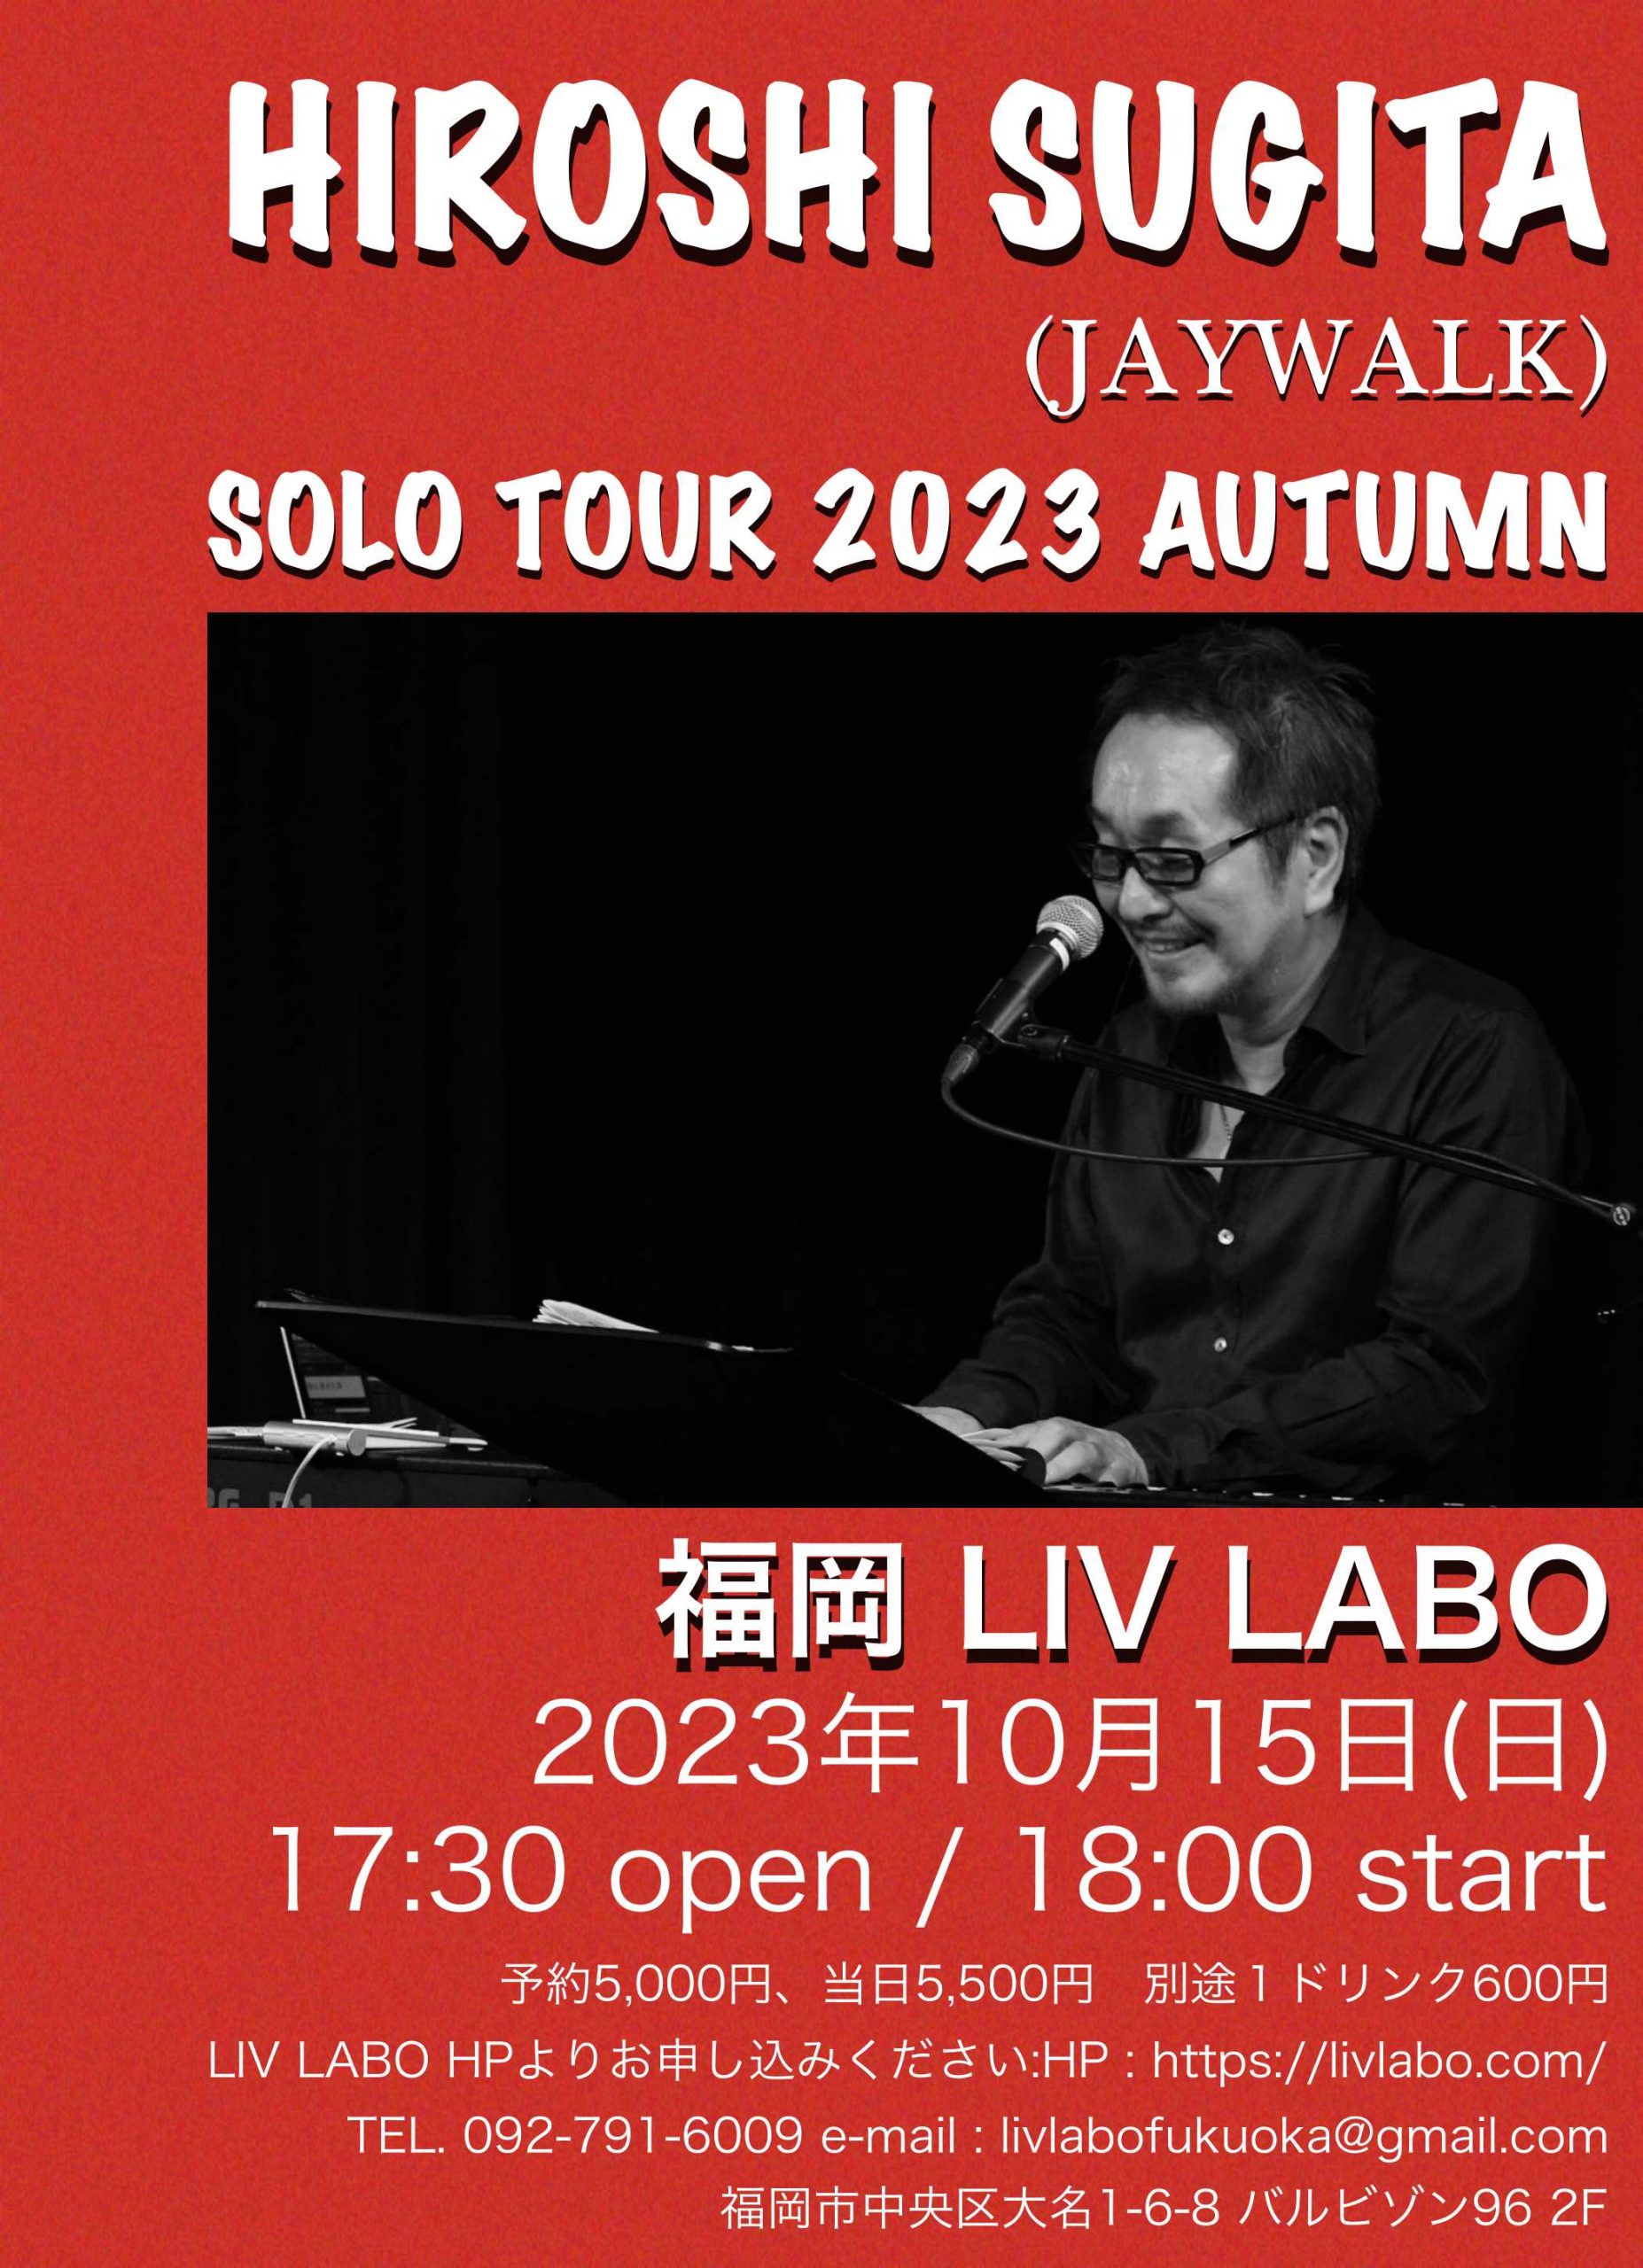 HIROSHI SUGITA(JAYWALK) SOLO TOUR 2023 AUTUMN 福岡